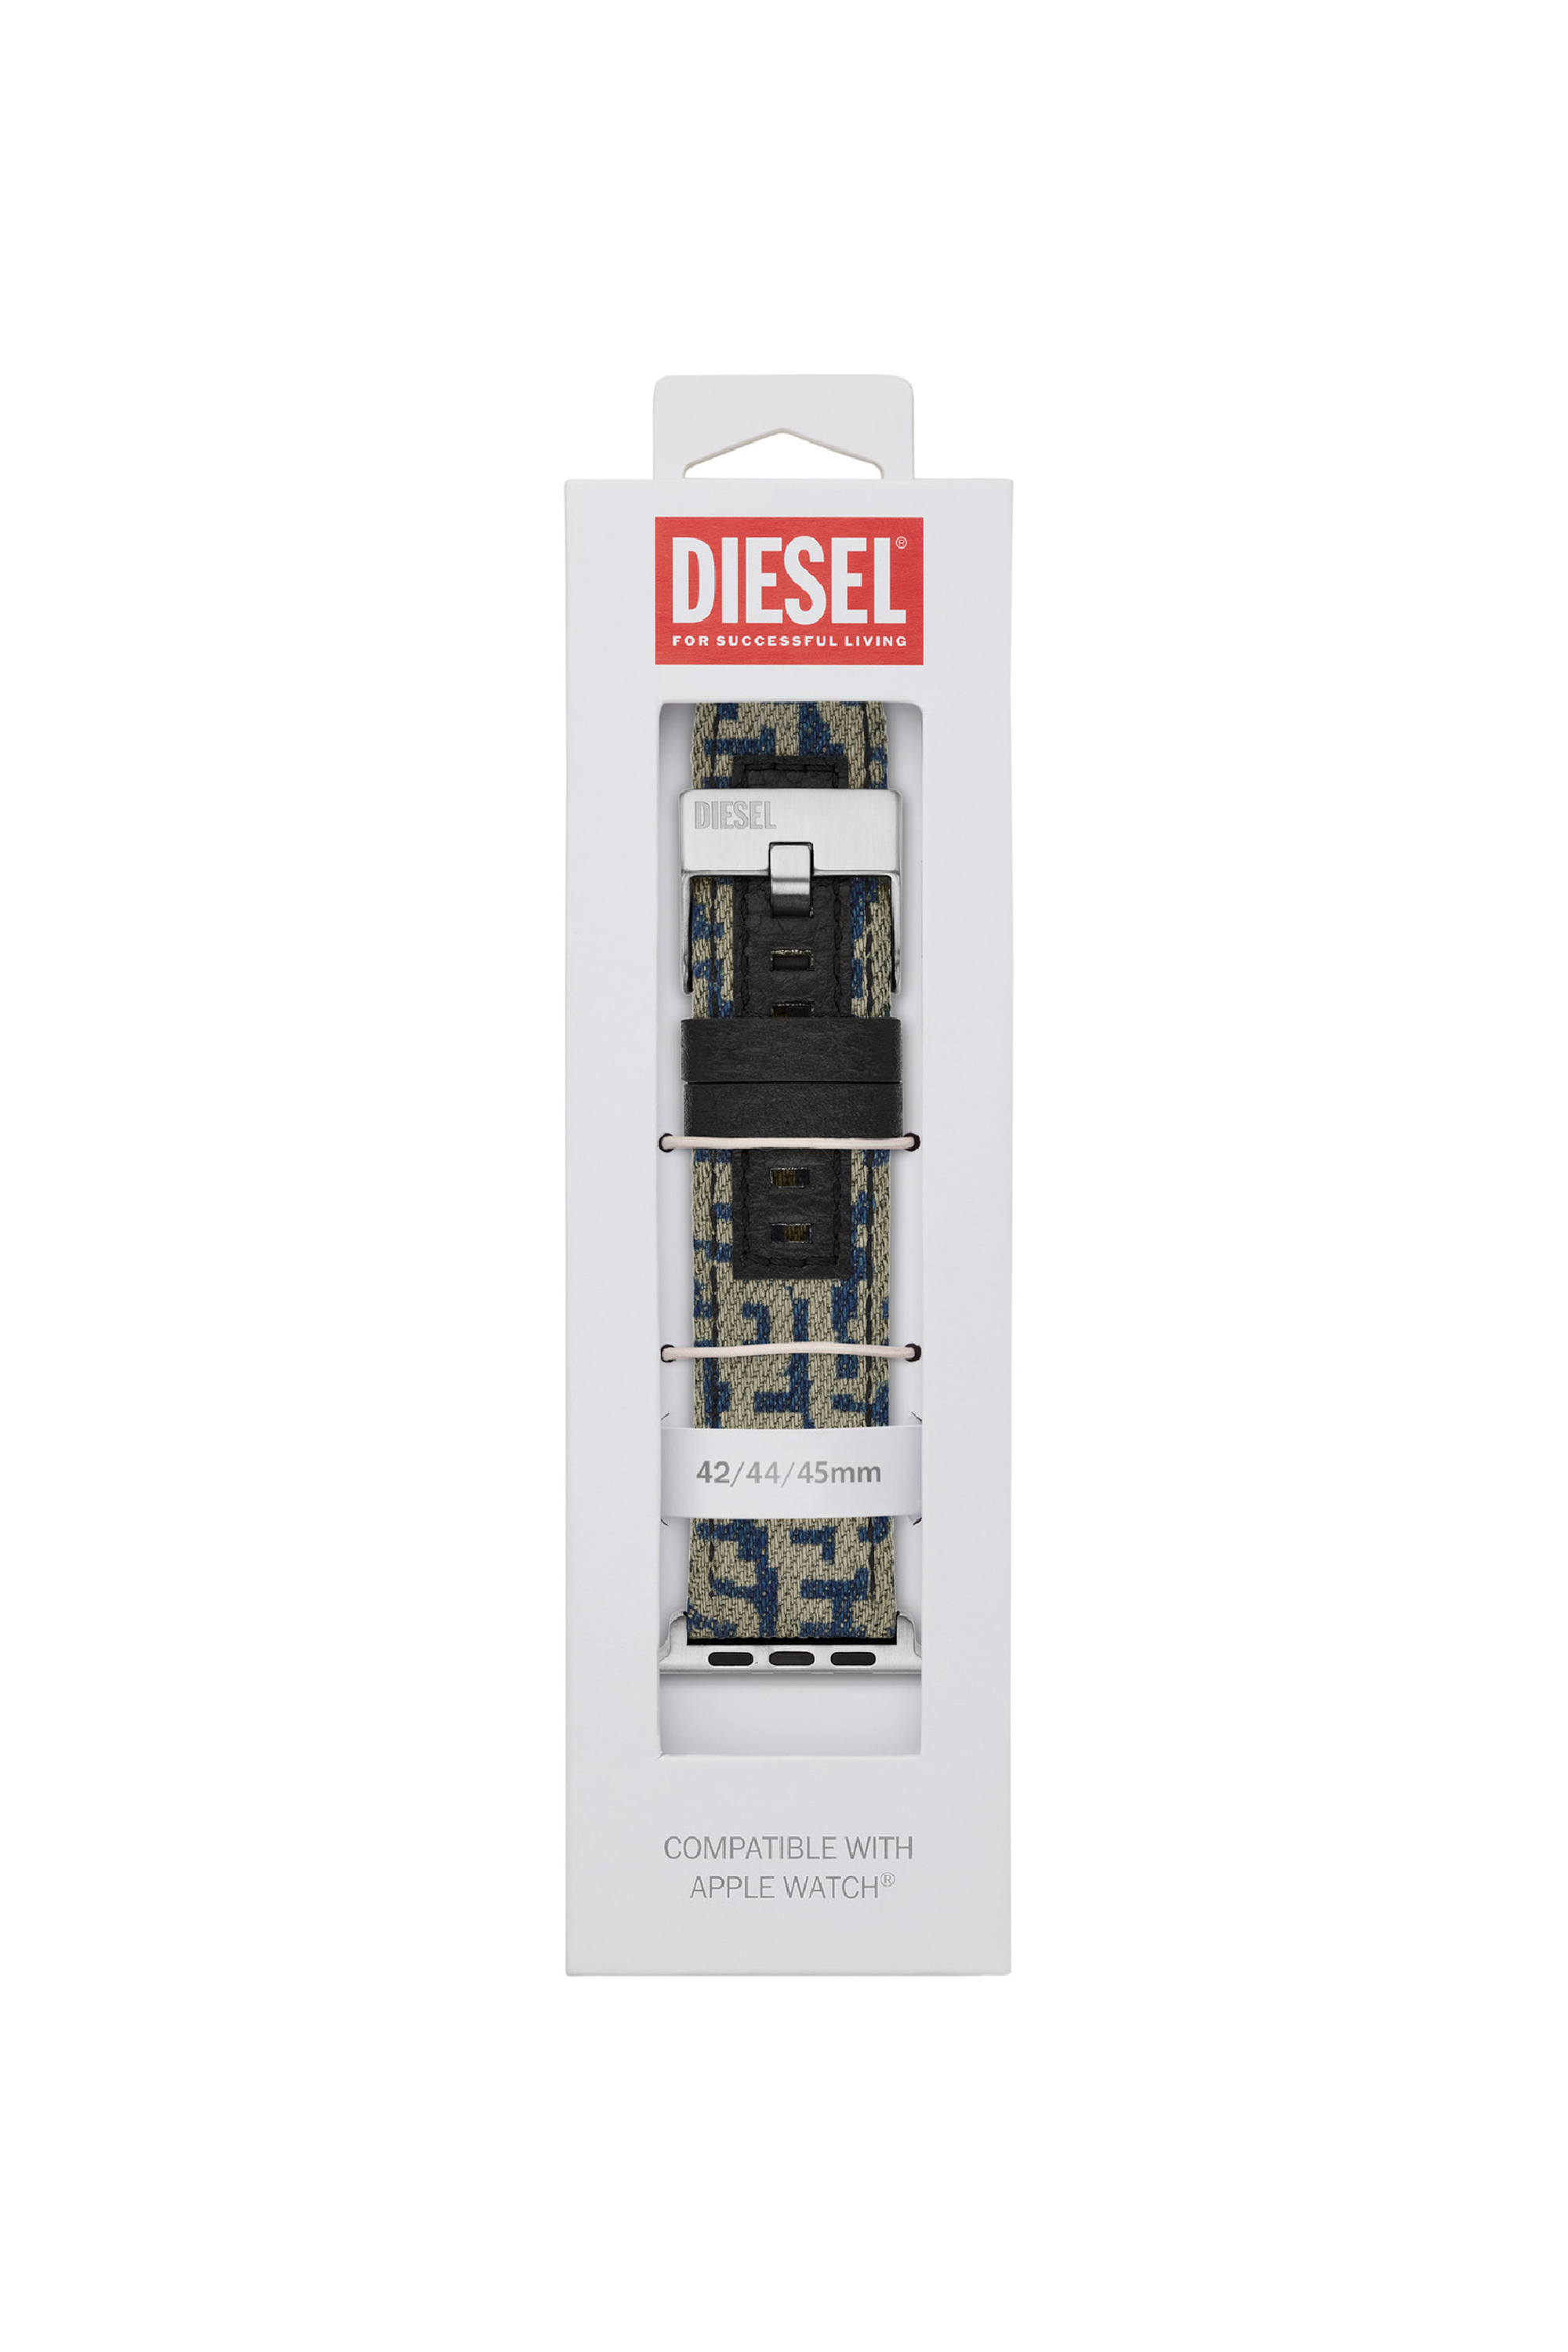 Diesel - DSS0013, Bleu - Image 2